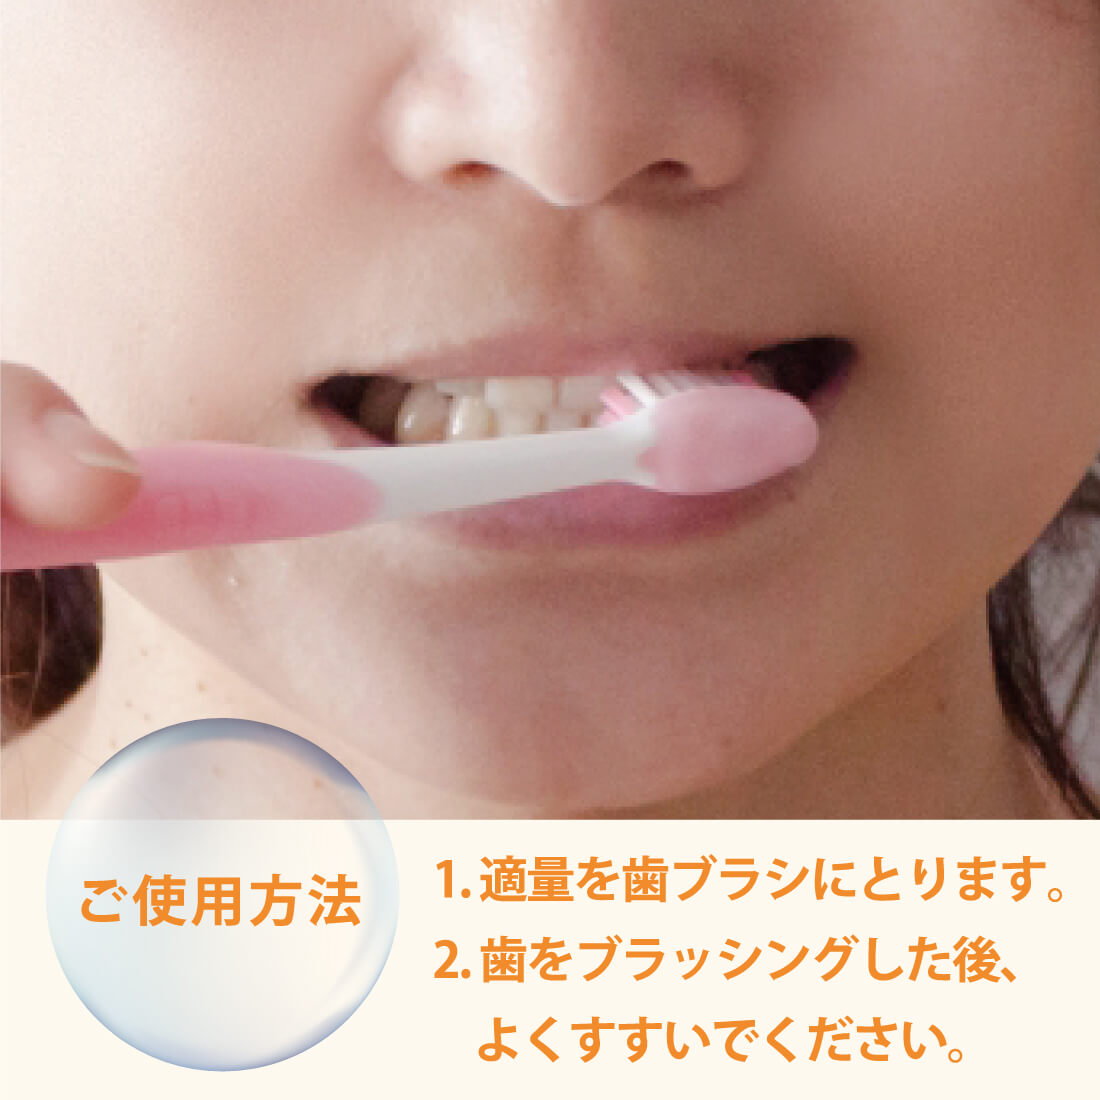 【ご使用方法】1. 適量を歯ブラシにとります 2. 歯をブラッシングした後、よ くすすいでください。